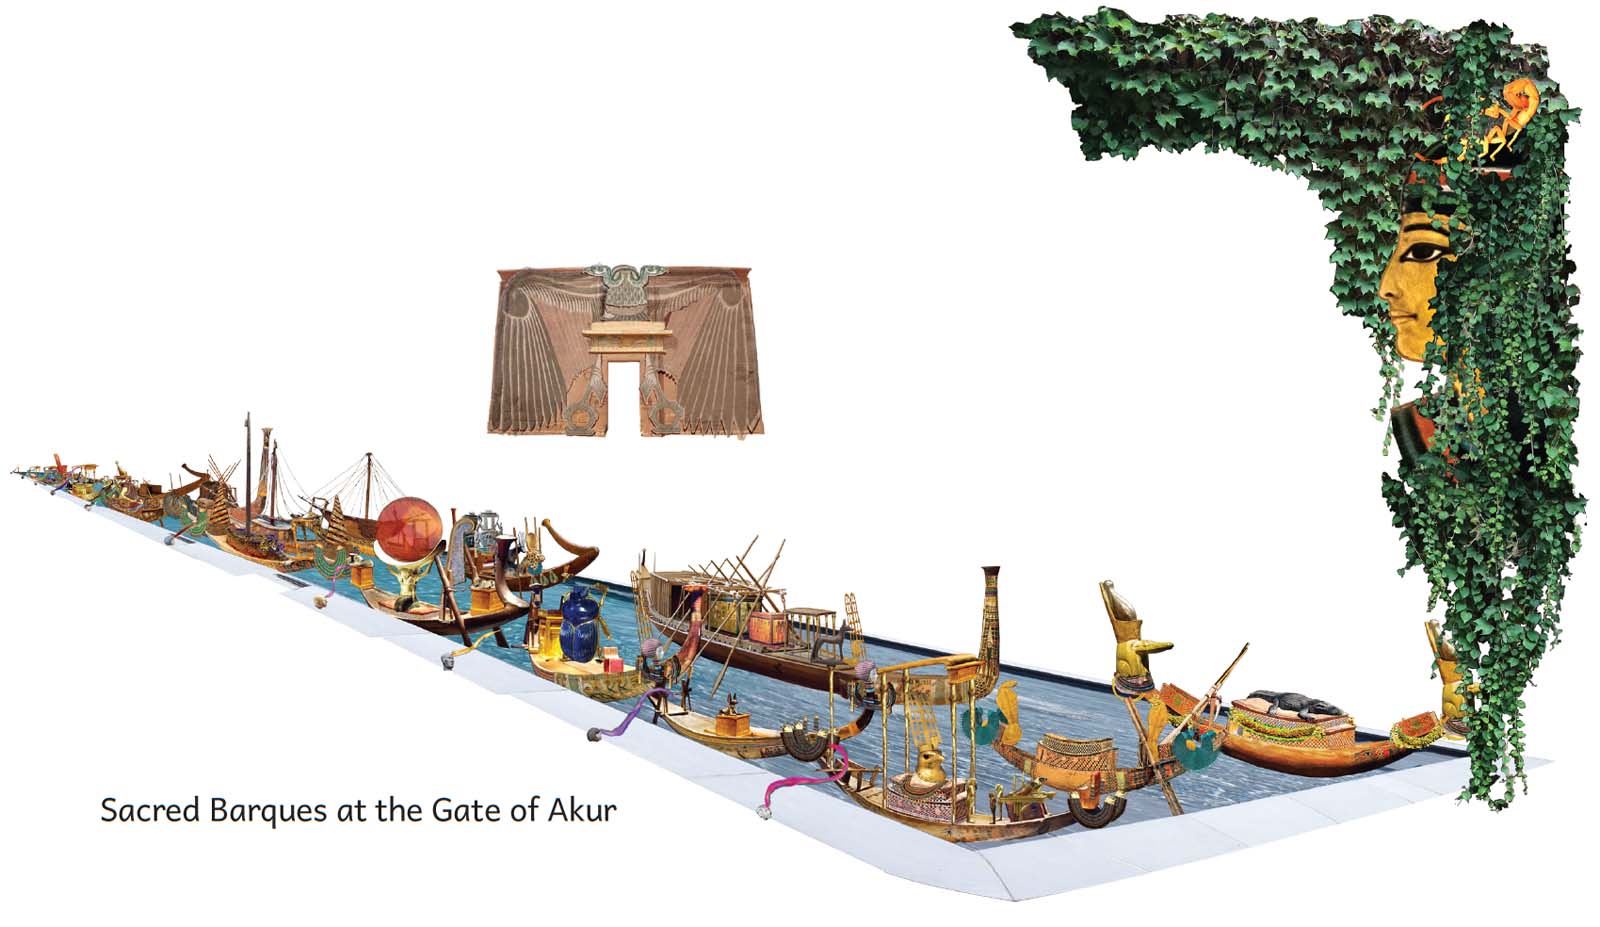 Gate of Akur